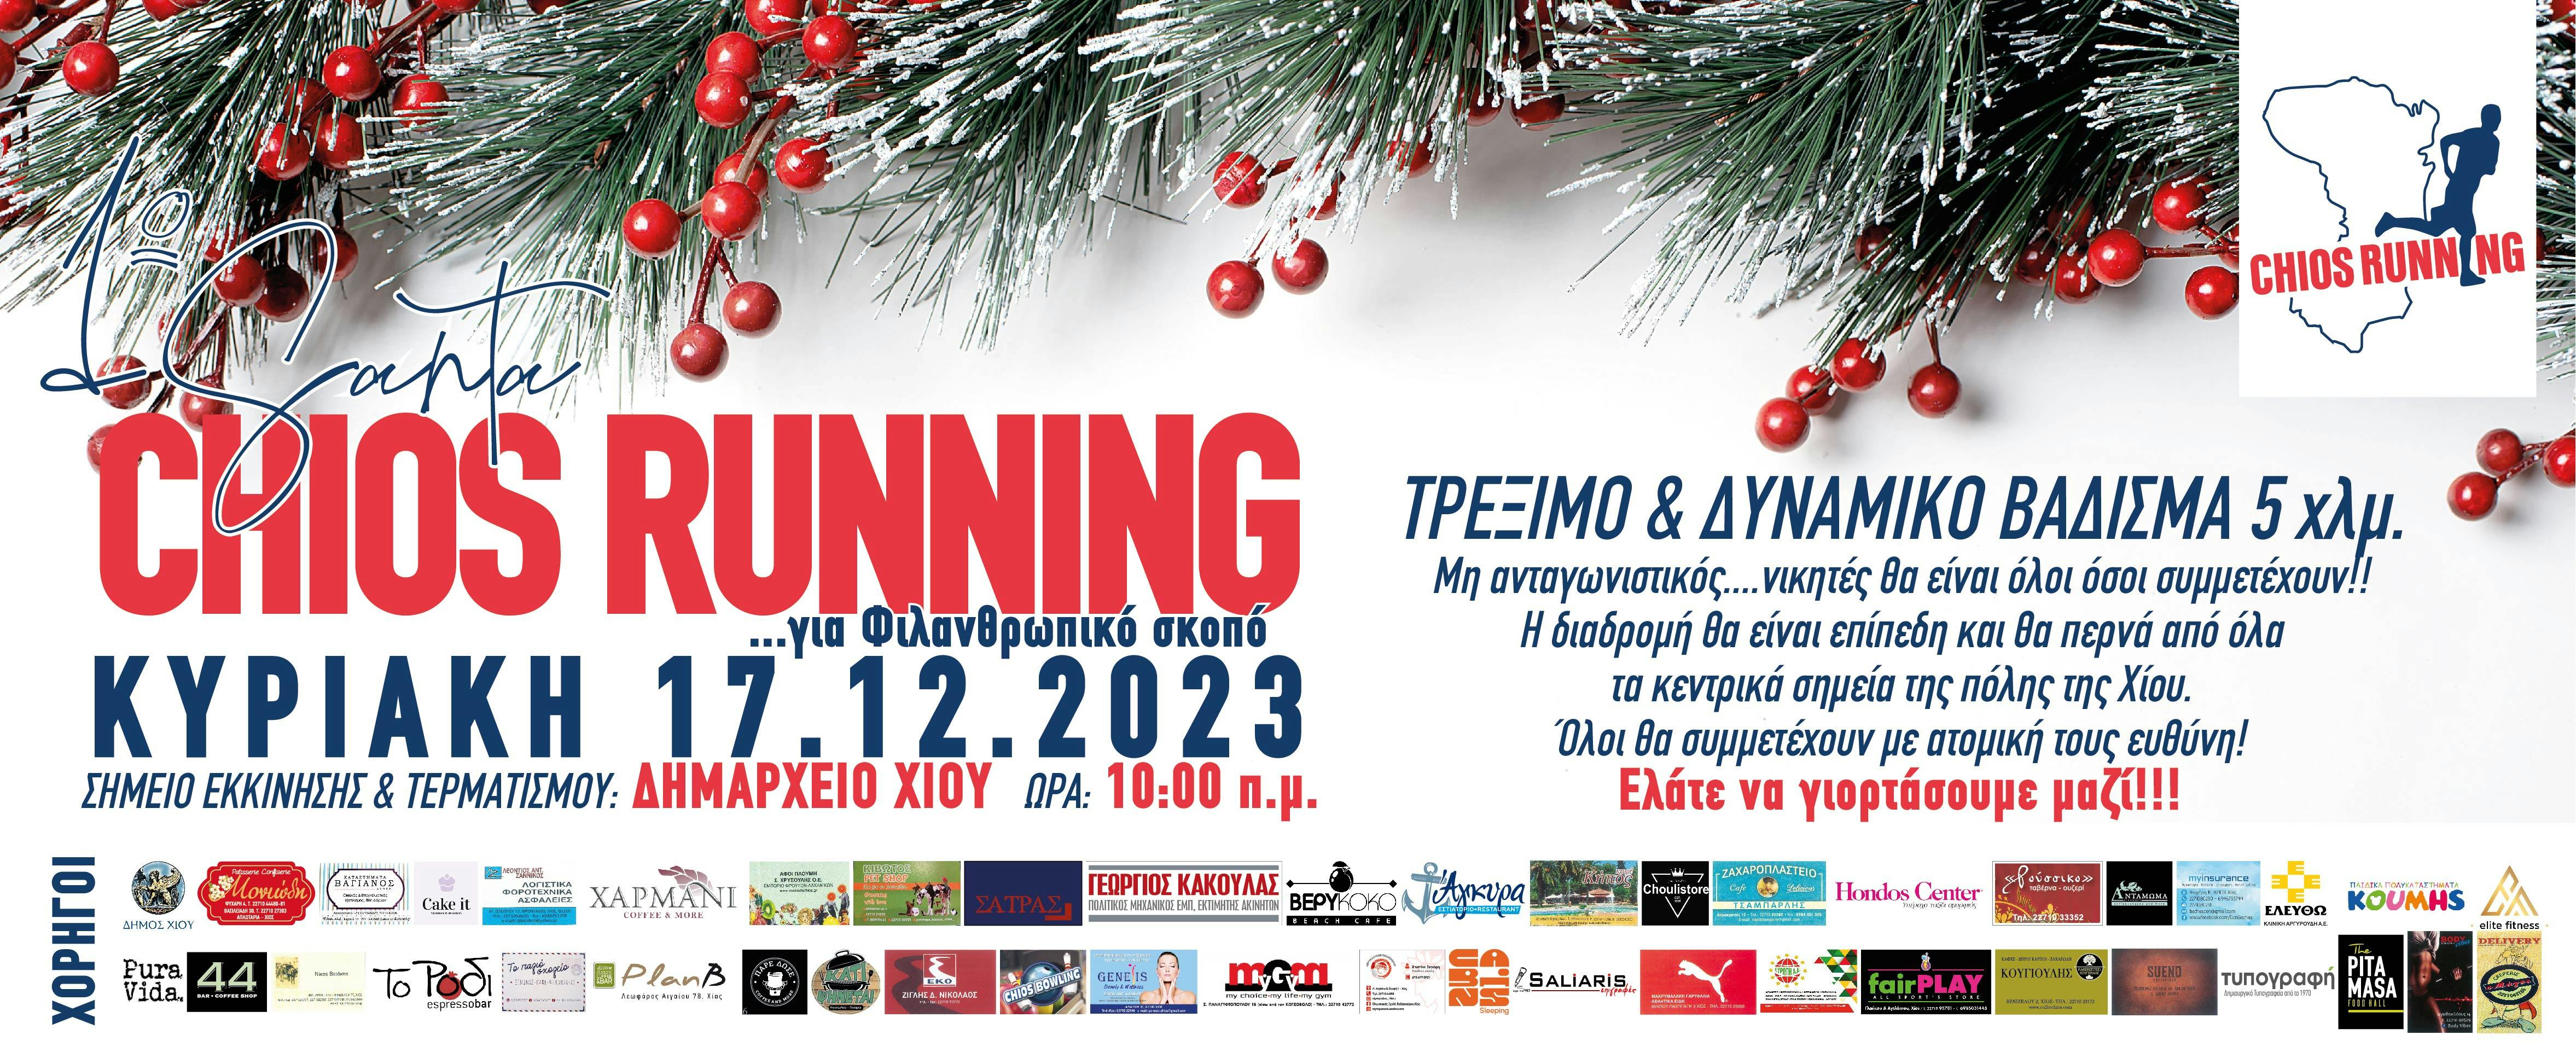 Την Κυριακή 17 Δεκεμβρίου το 1ο Santa Chiosrunning!